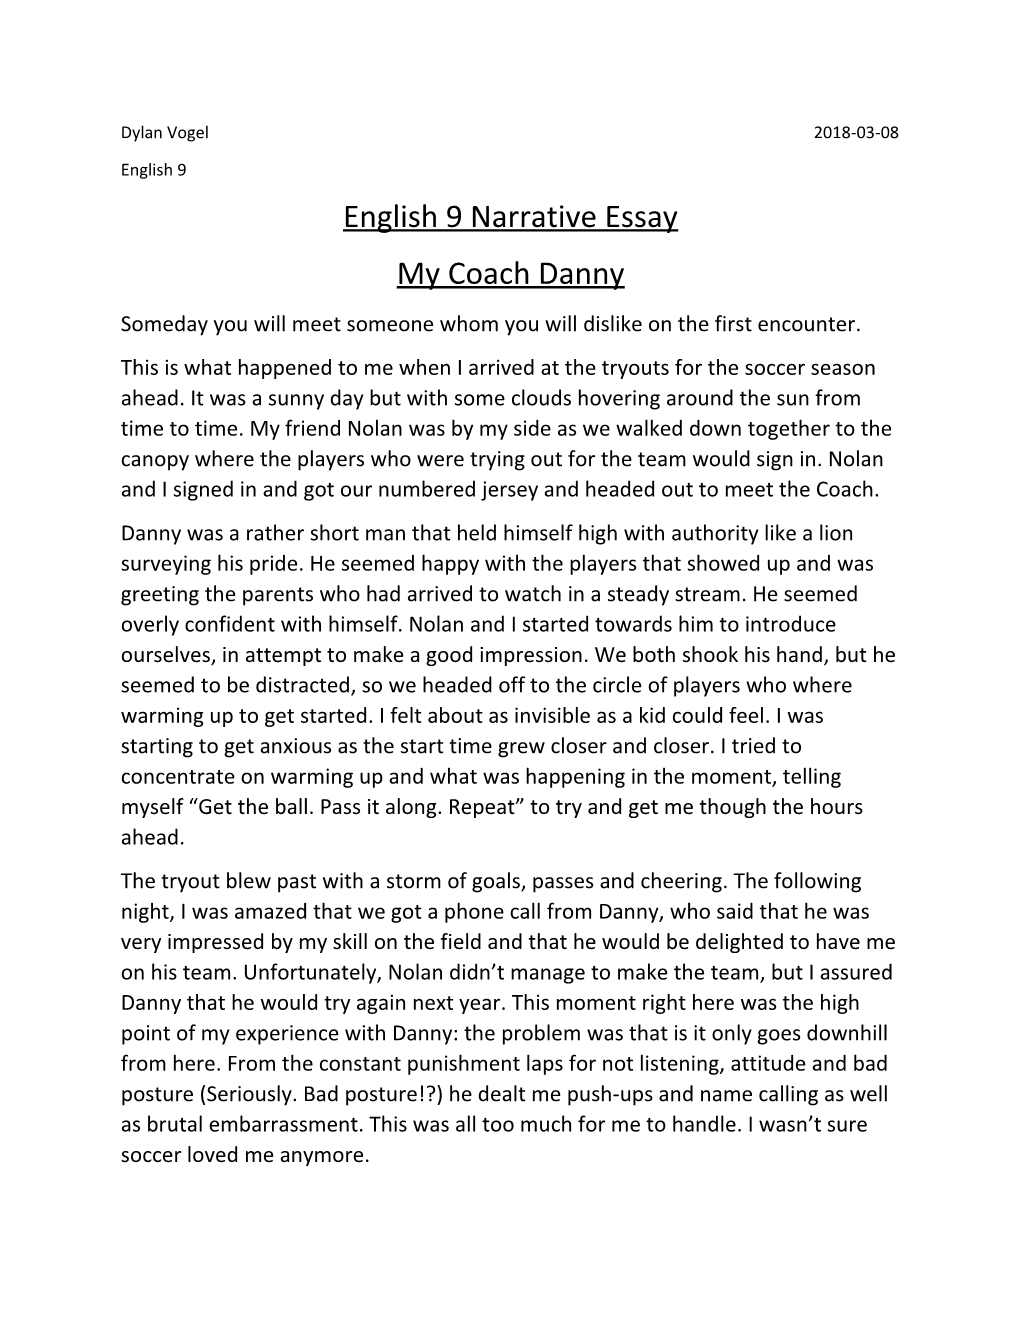 English 9 Narrative Essay